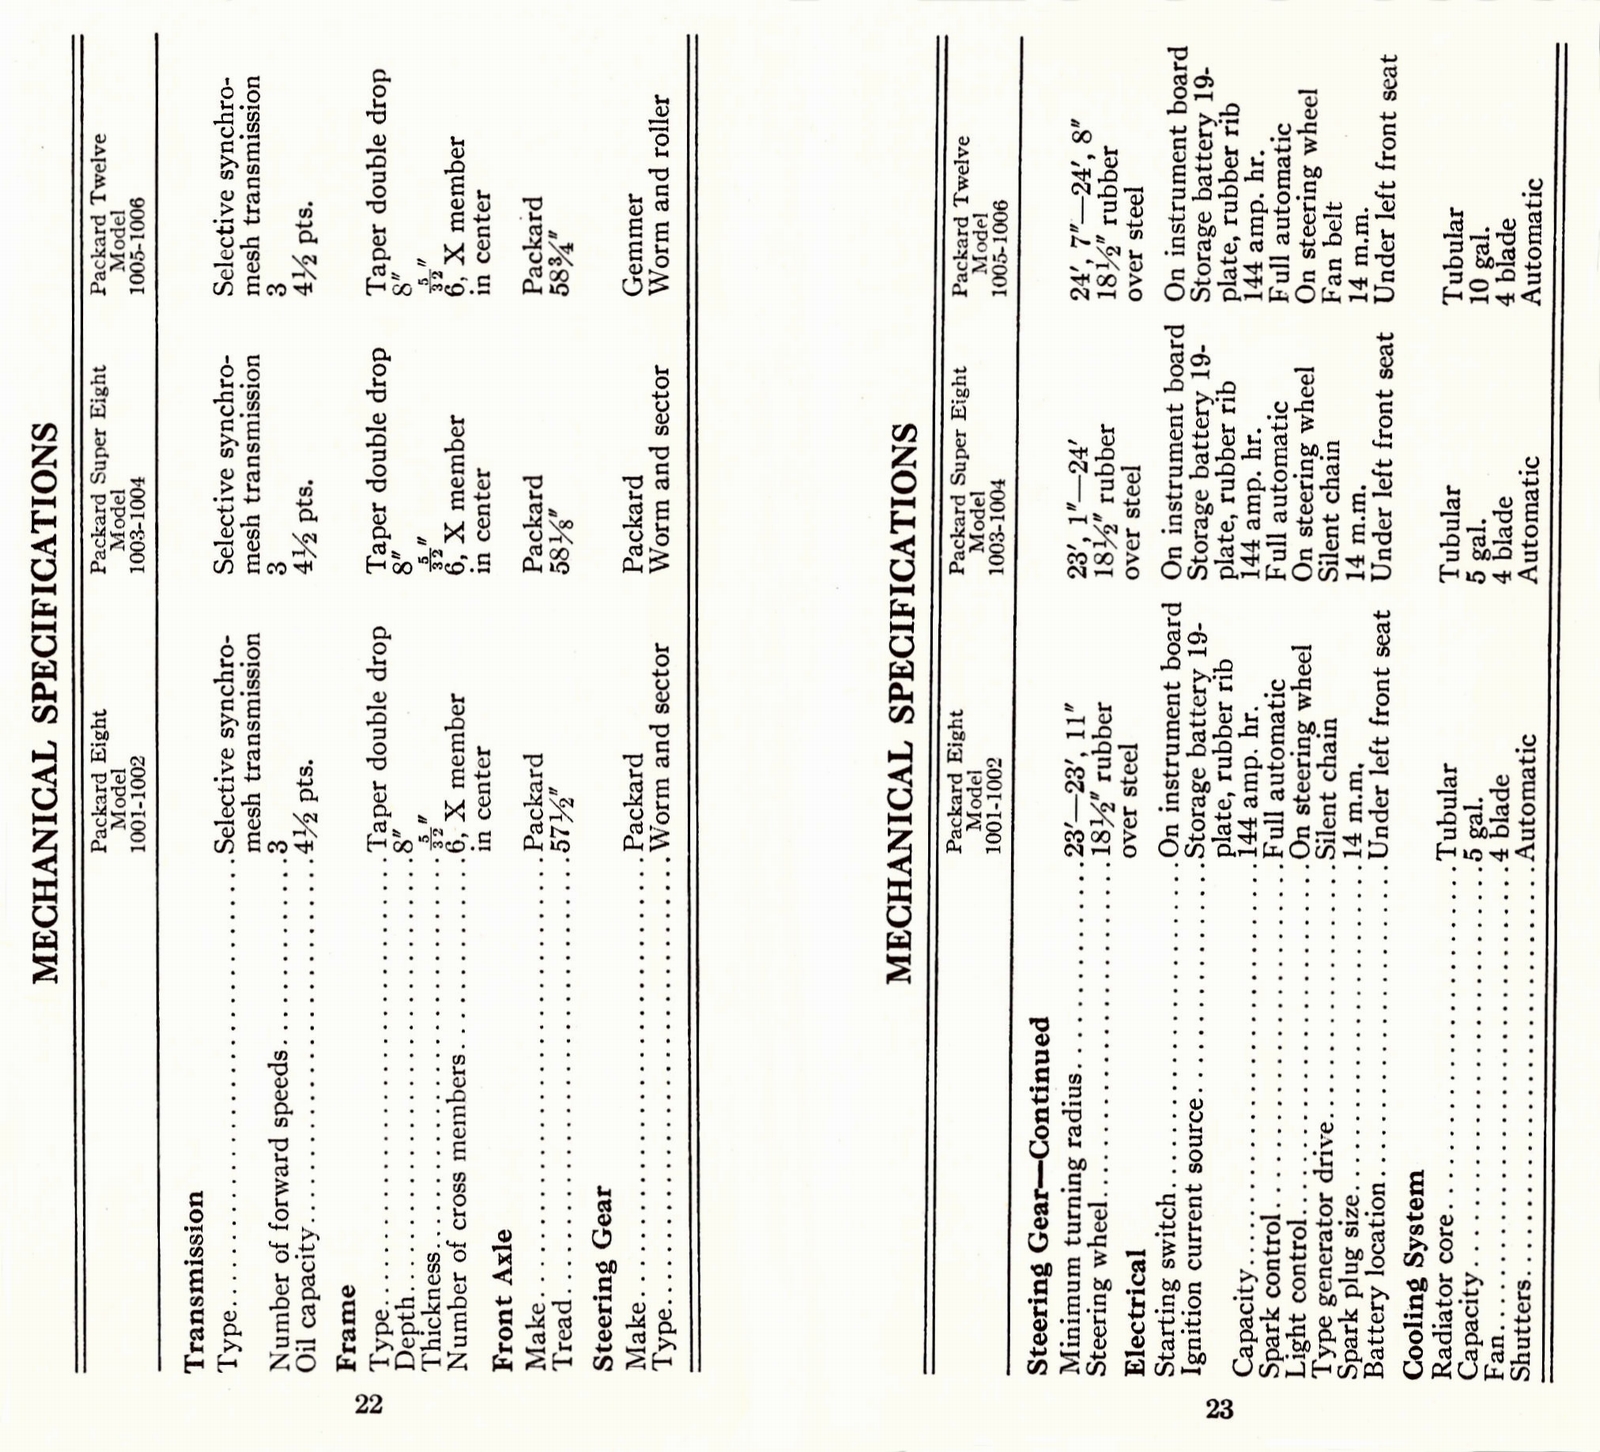 n_1933 Packard Facts Booklet-22-23.jpg